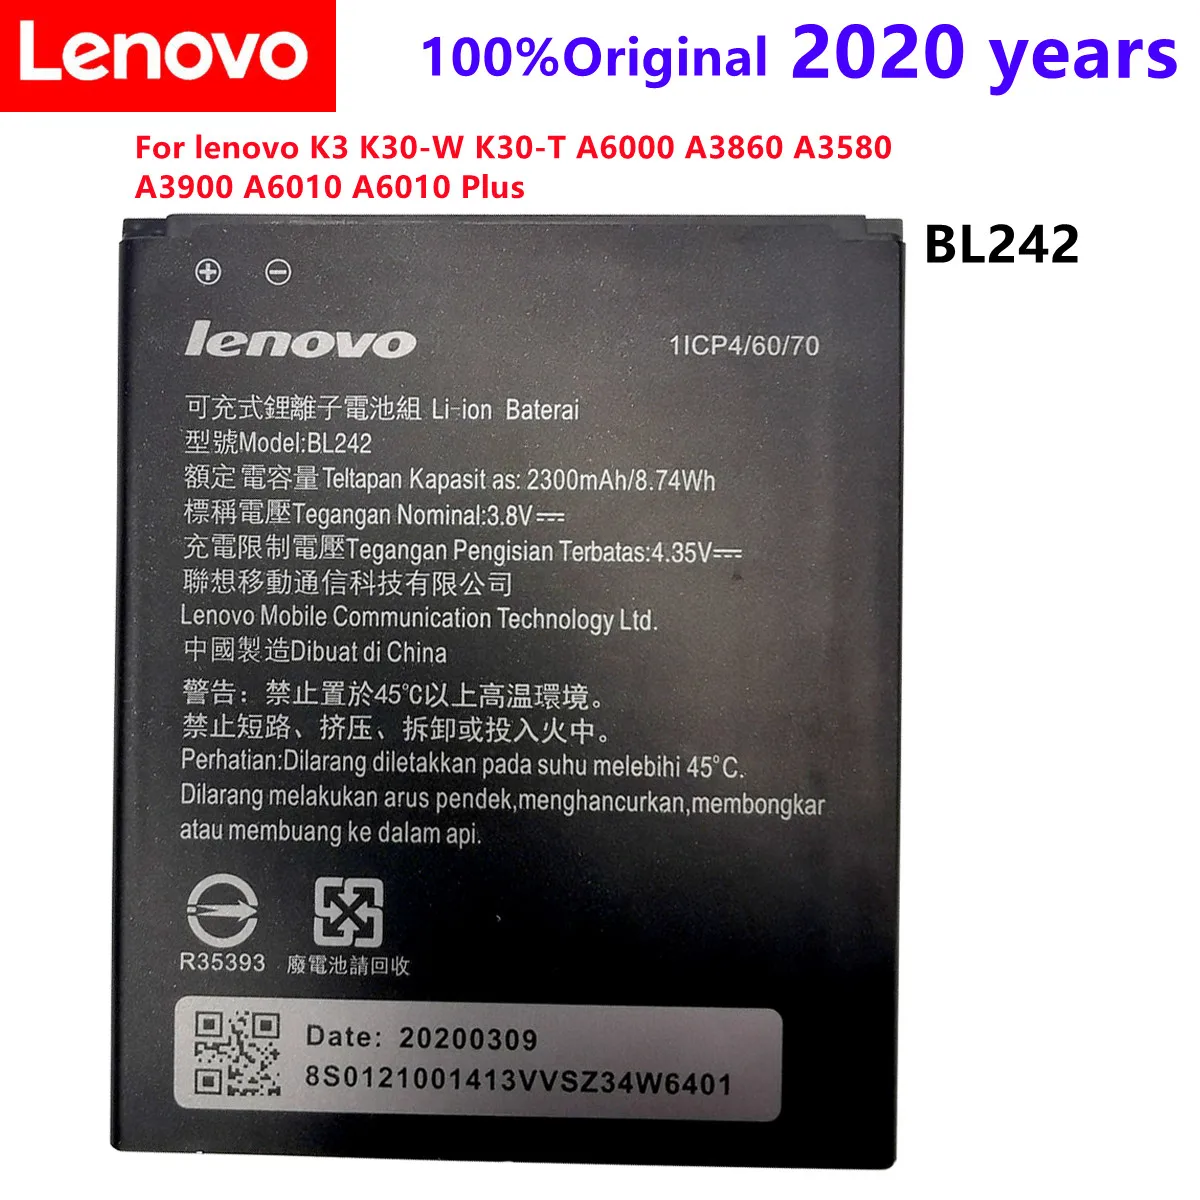 

BL 242 BL242 Battery For lenovo K3 K30-W K30-T A6000 A3860 A3580 A3900 A6010 A6010 Plus Batterie Bateria Accumulator